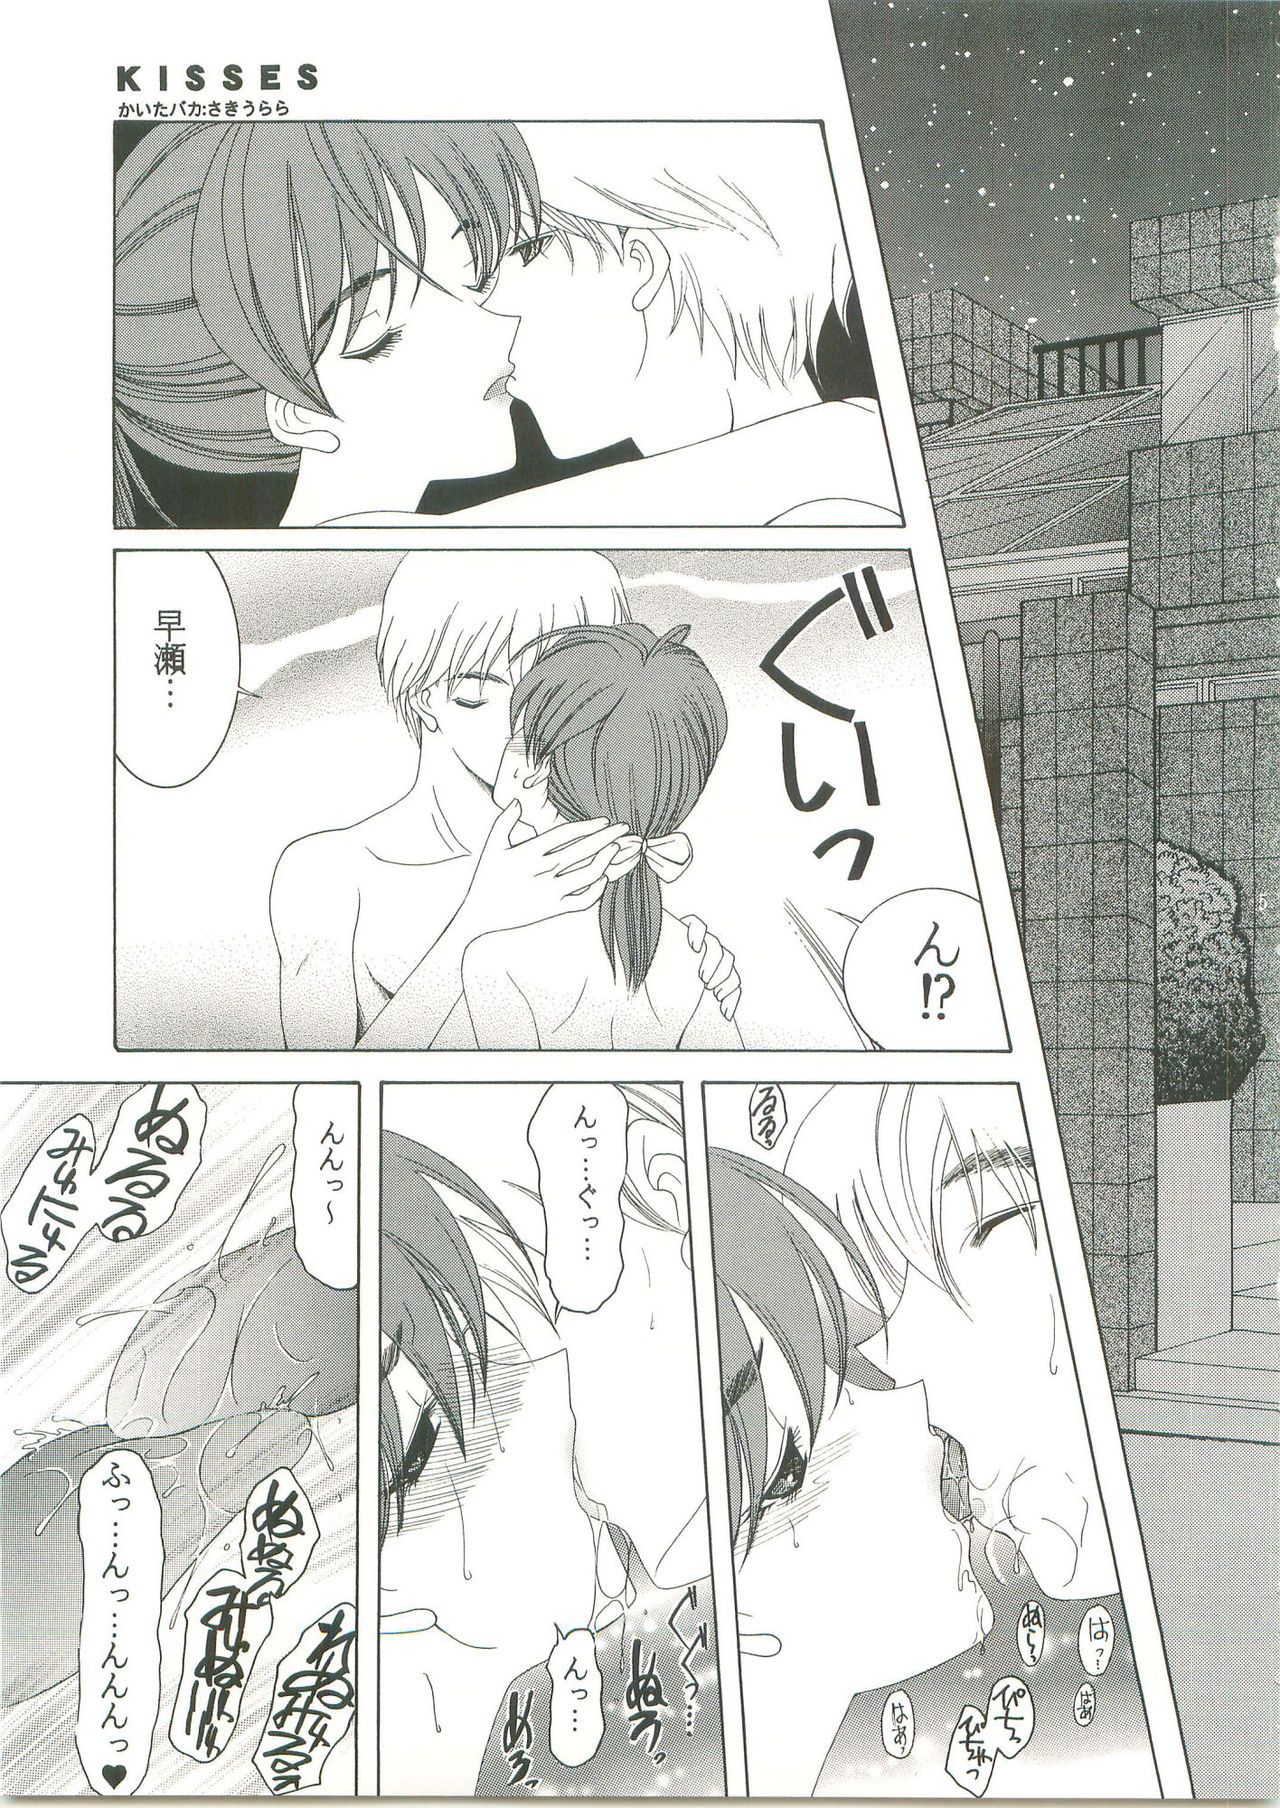 (CR33) [Knife Edge (Saki Urara)] KISSES (SEXFRIEND) (コミックレヴォリューション33) [ナイフエッジ (さきうらら)] KISSES (SEXFRIEND)